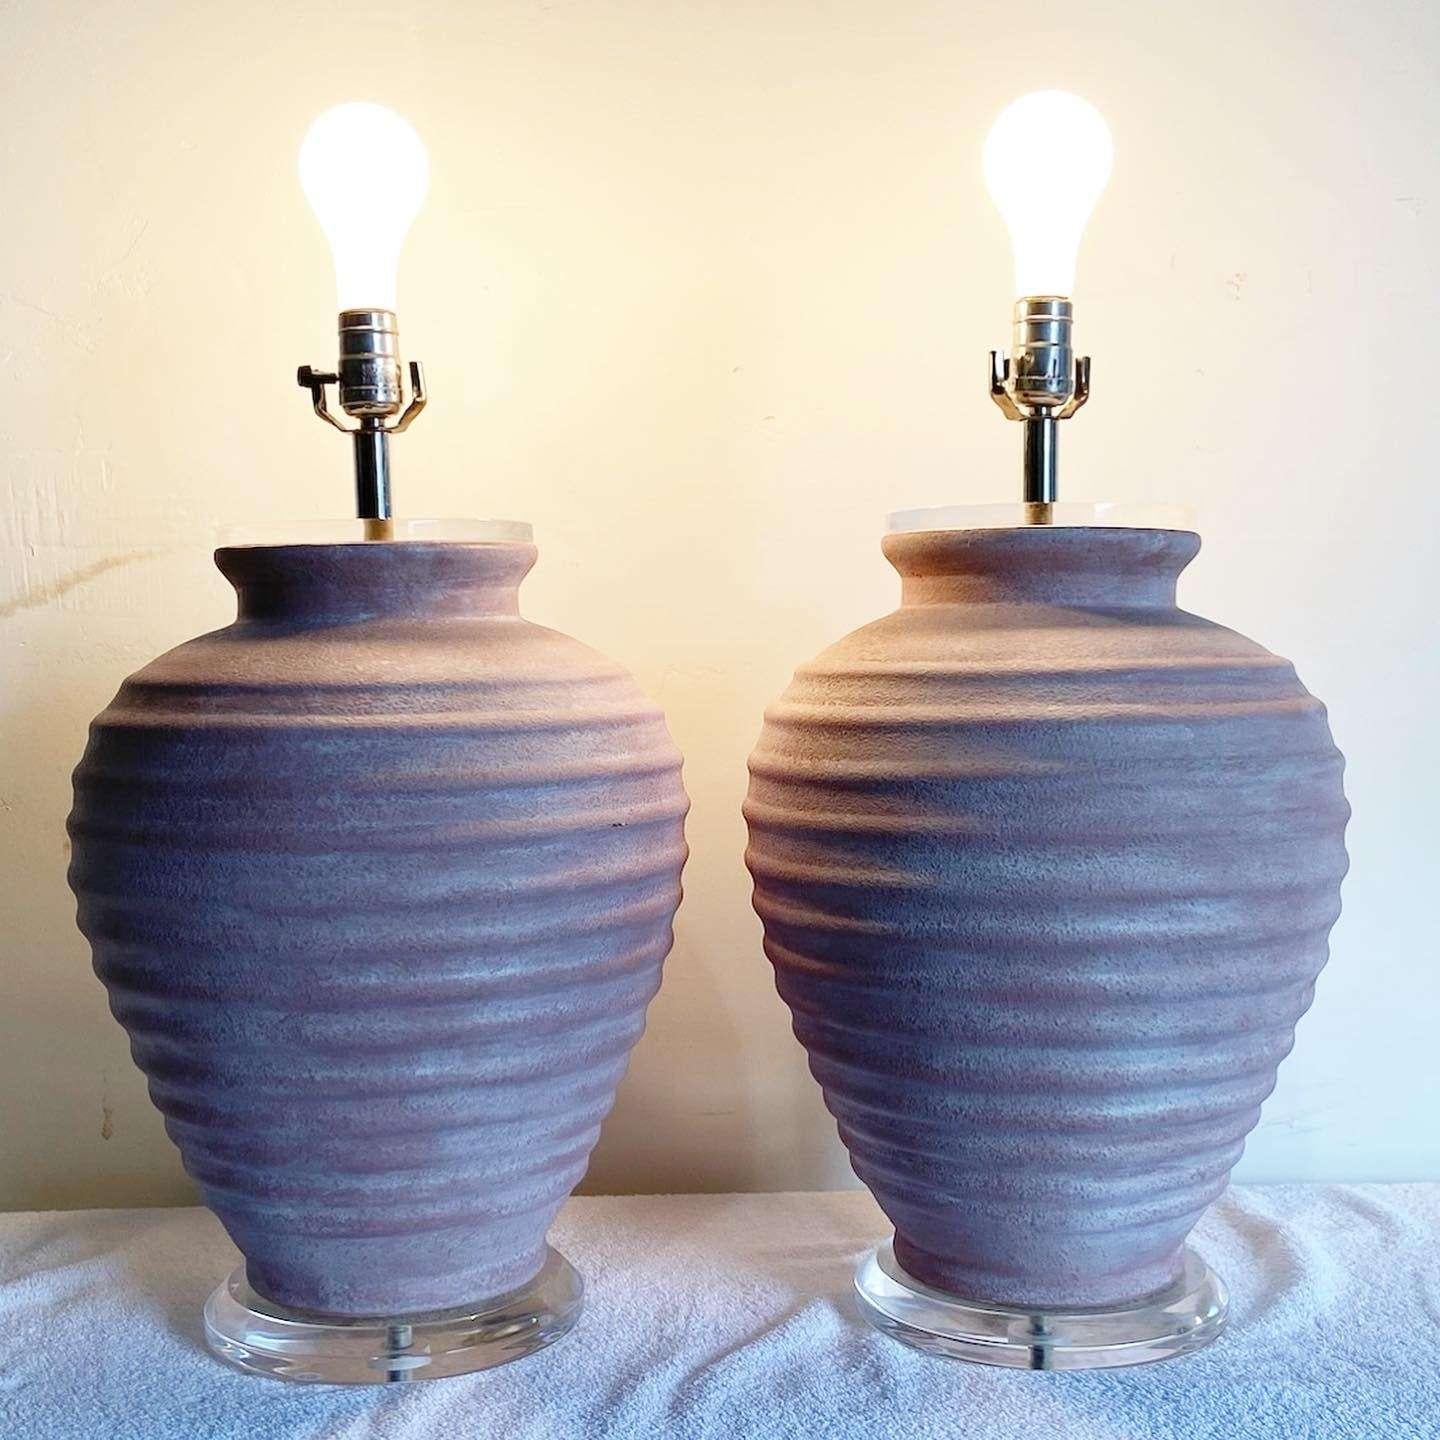 Superbe paire de lampes de table en céramique. Chacune d'entre elles présente un lavis rose sur un corps nervuré avec un disque en lucite en dessous et au-dessus de la céramique.